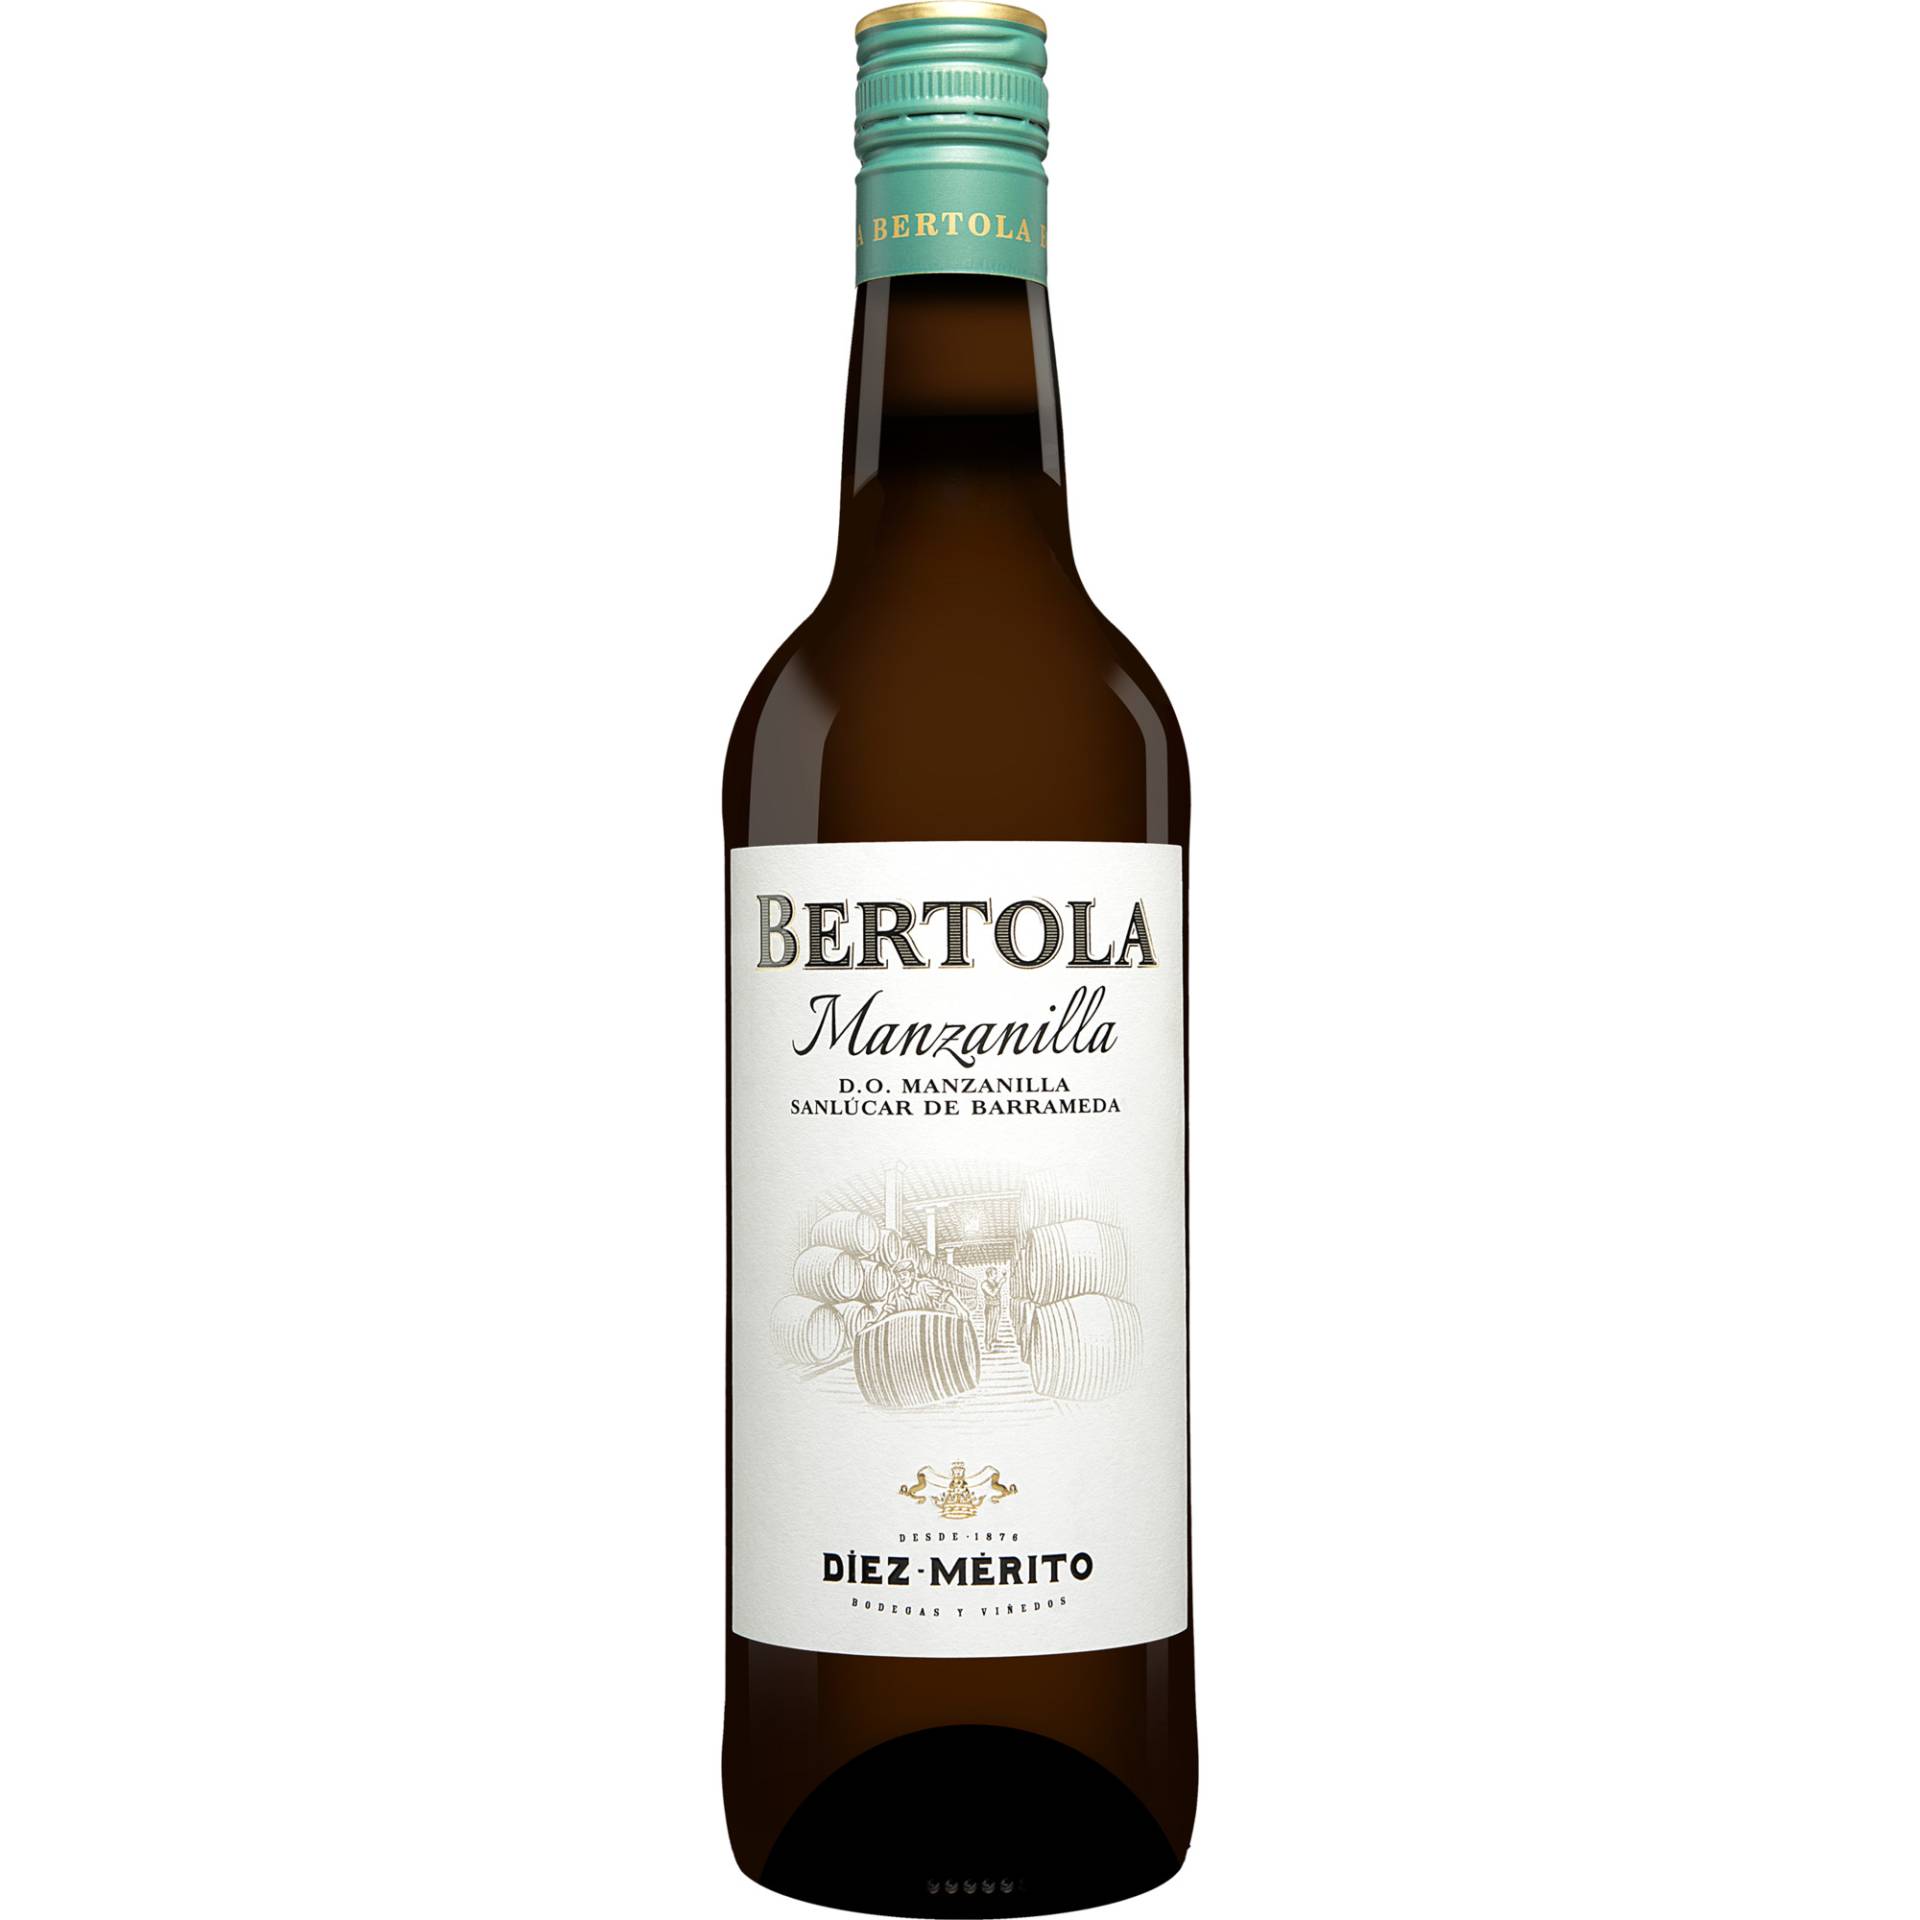 Diez Mérito »Bertola« Manzanilla  0.75L 15% Vol. Trocken aus Spanien von Diez Merito